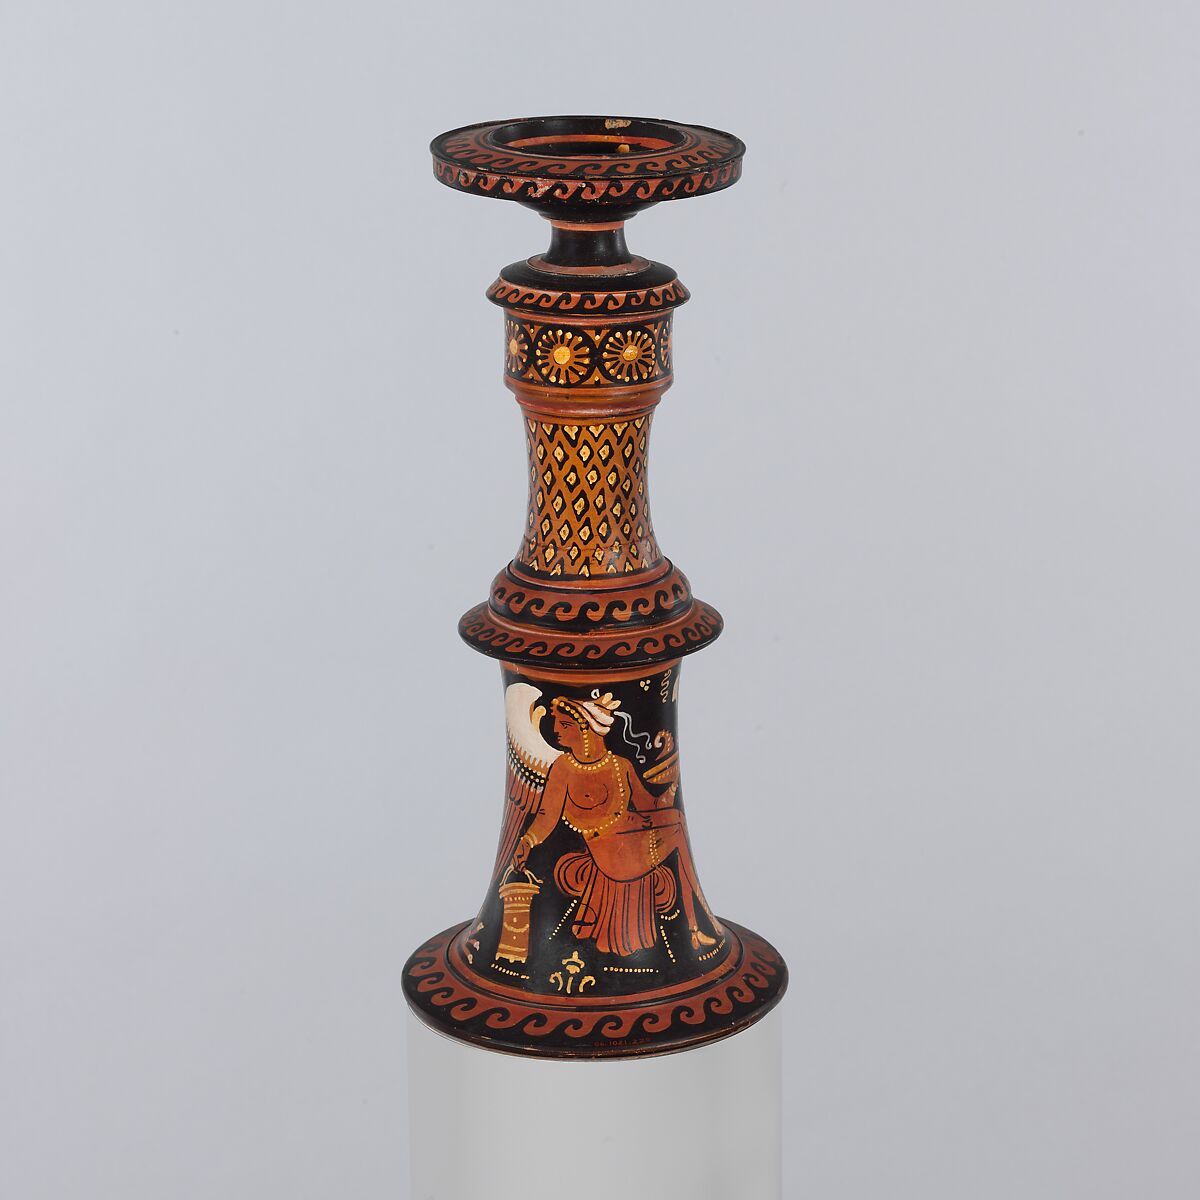 Terracotta thymiaterion (incense burner), Stuttgart Group, Terracotta, Greek, South Italian, Apulian